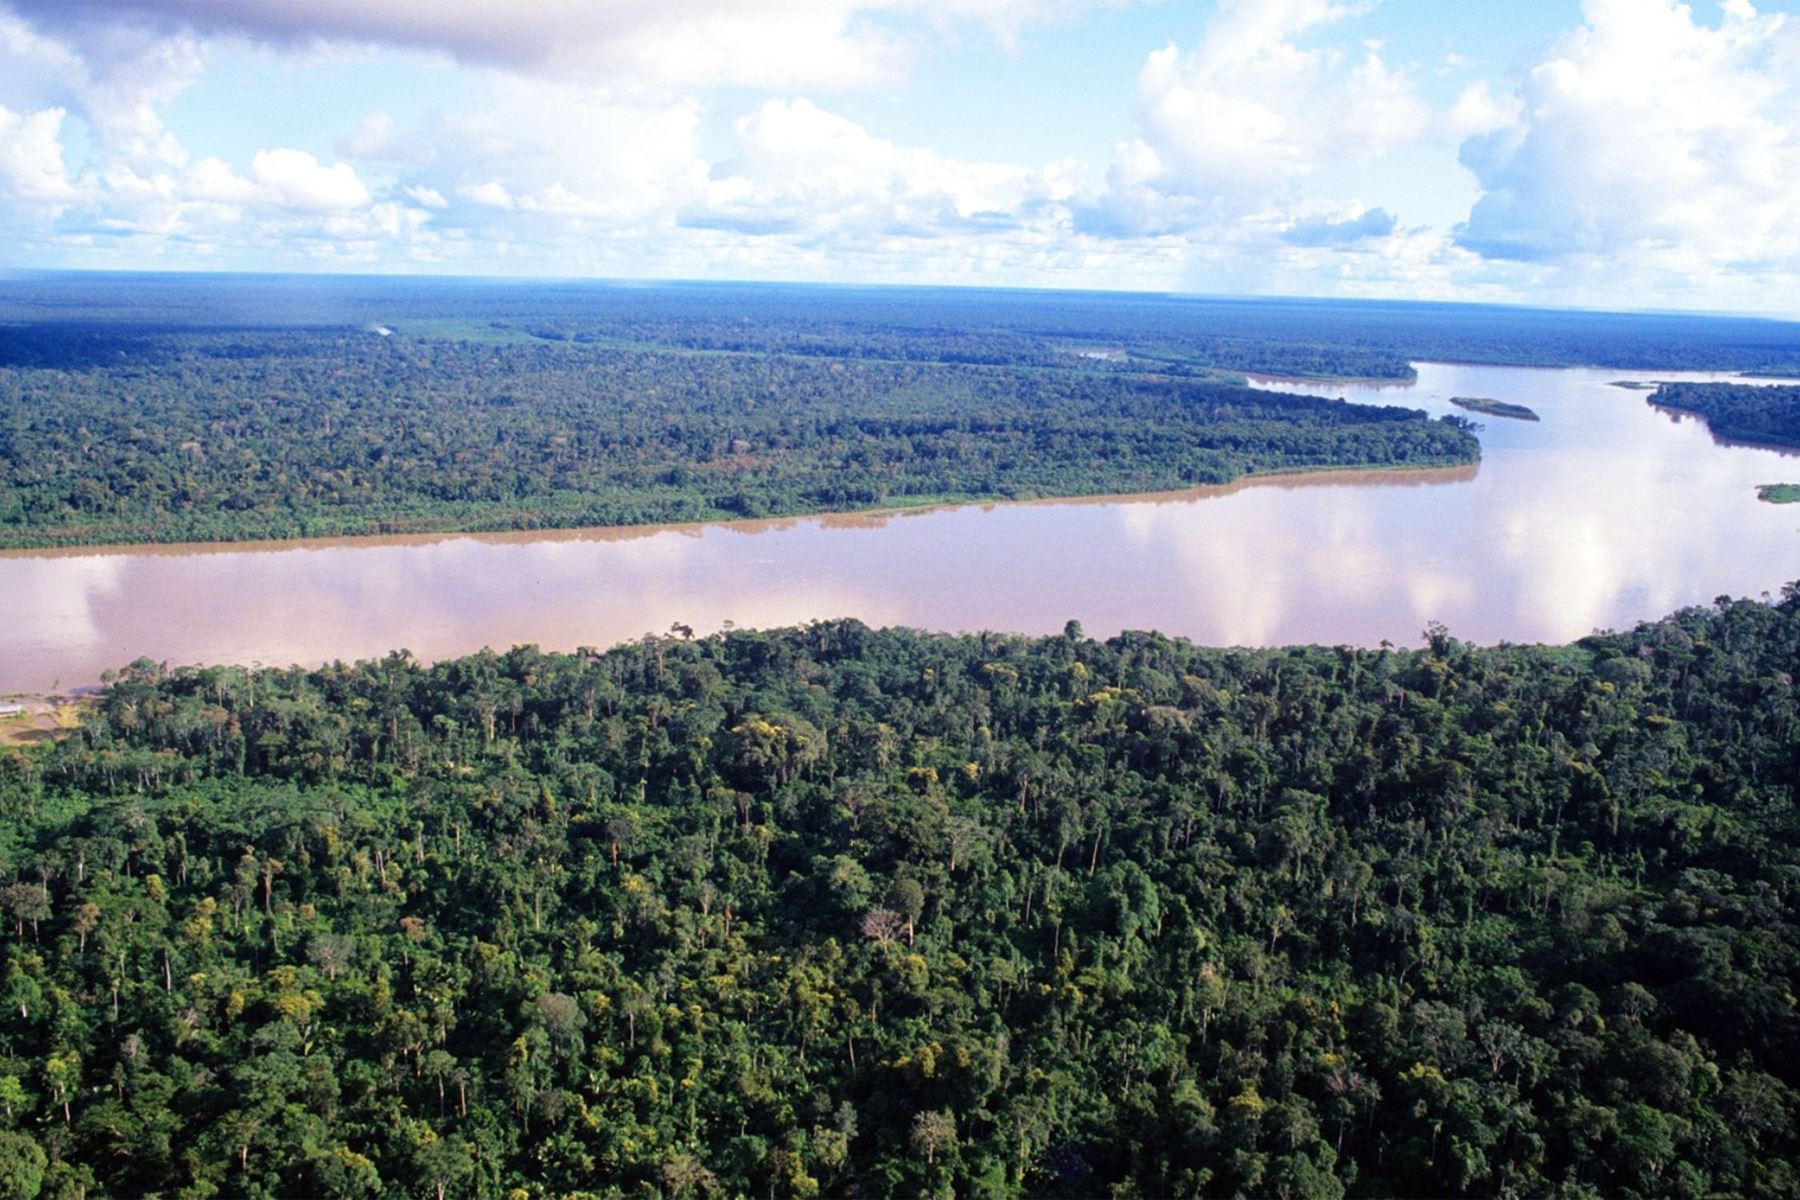 La iniciativa, además, busca concientizar sobre la biodiversidad en los ríos Amazónicos, a fin de mantener su equilibrio biológico.